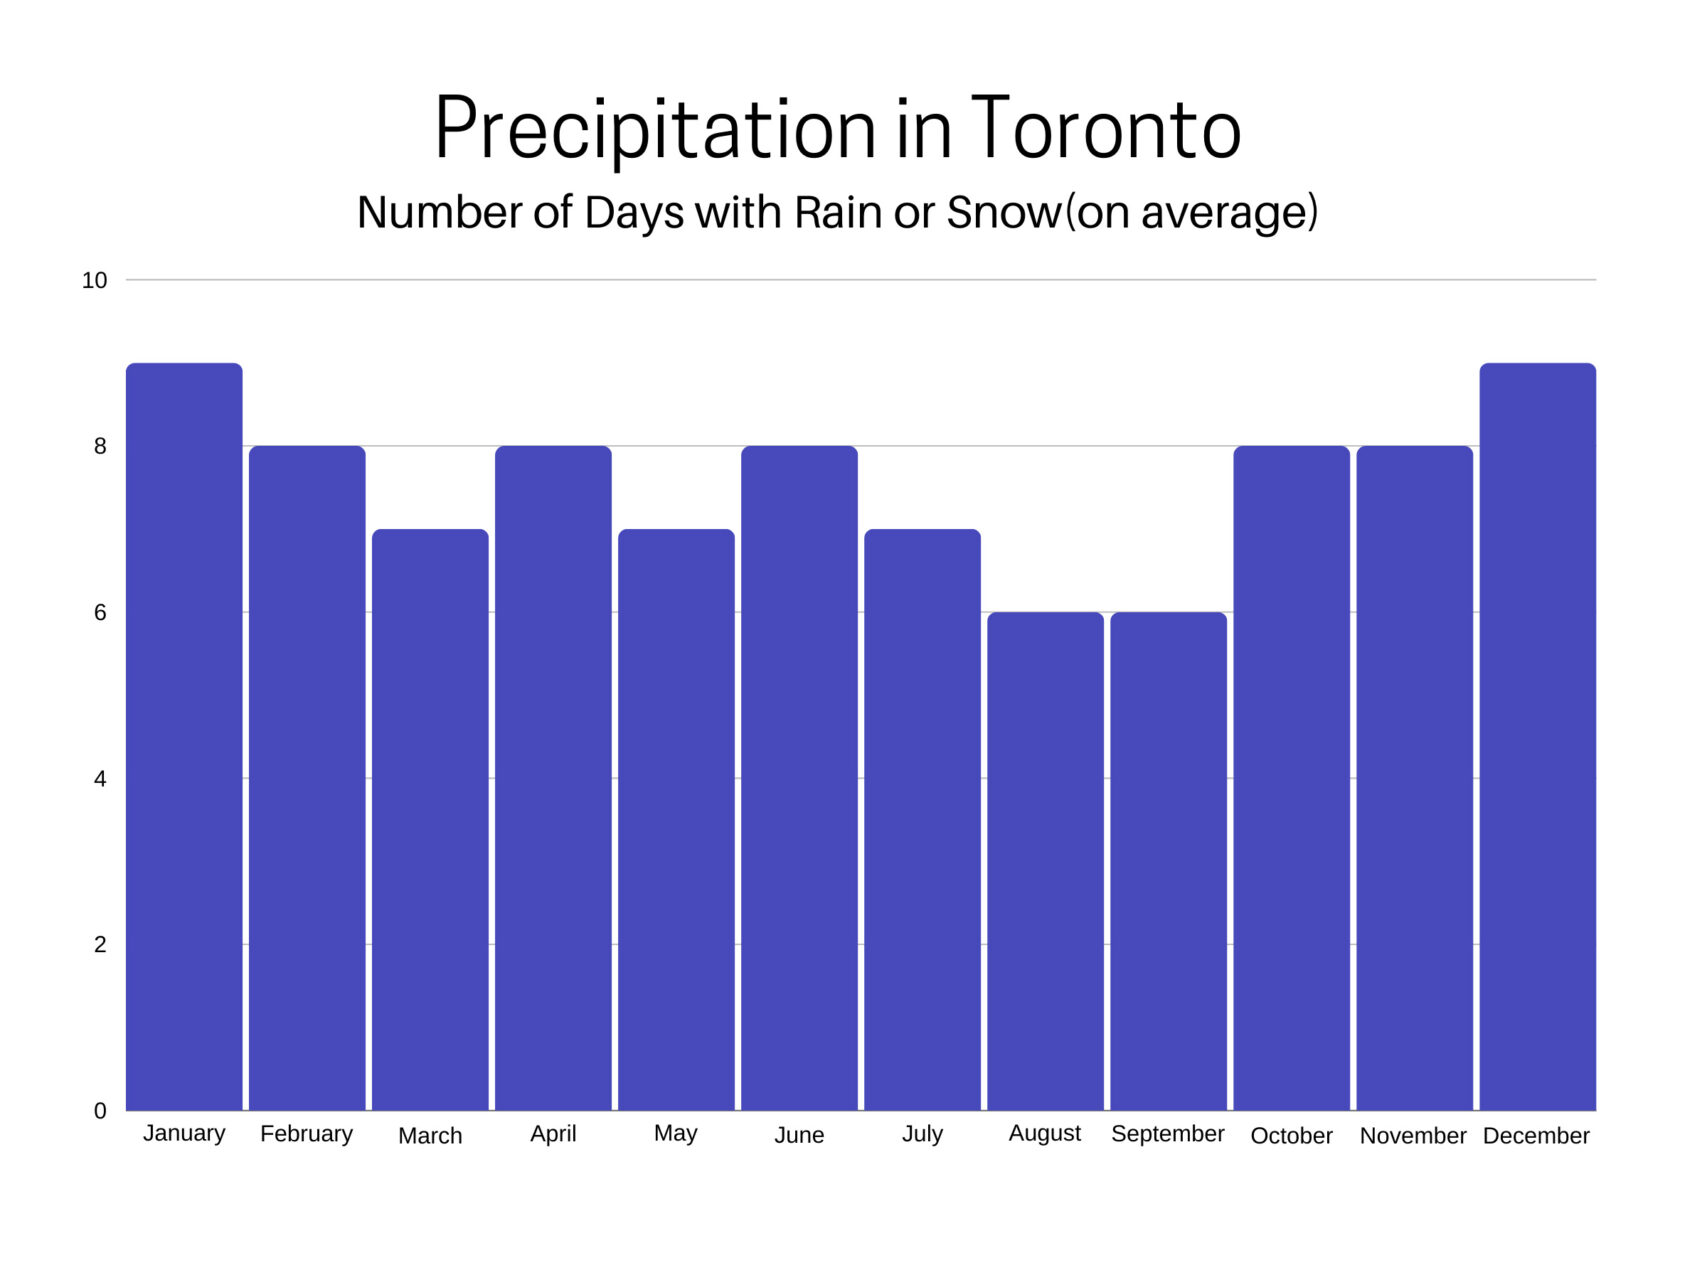 Annual precipitation in Toronto.